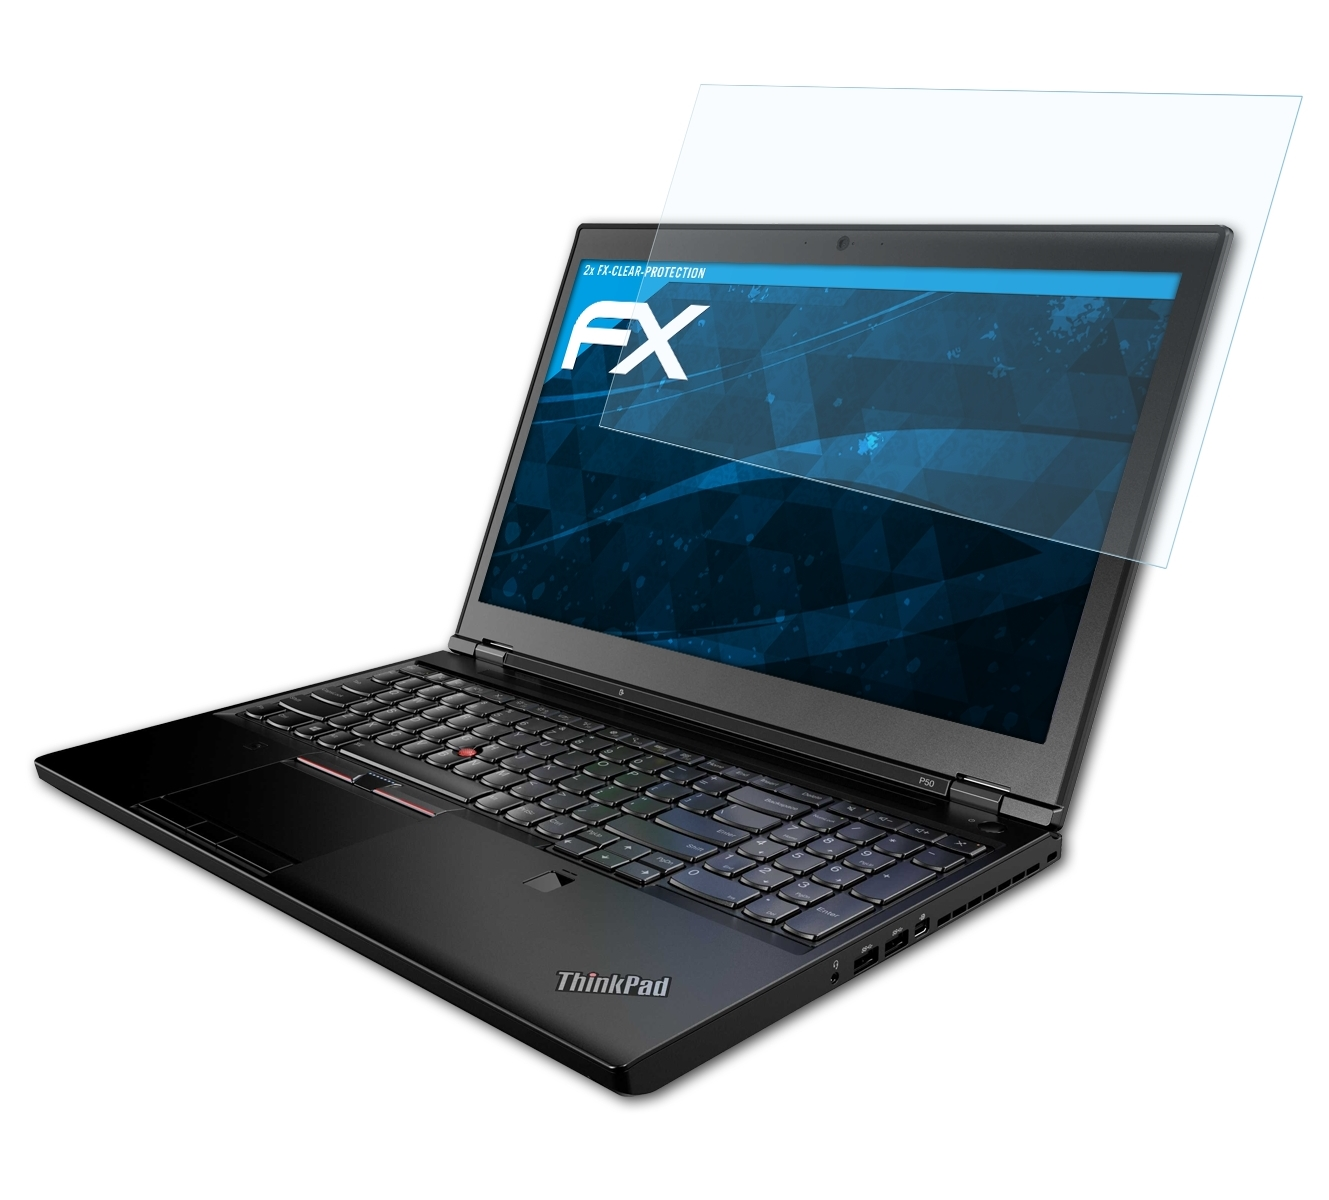 ThinkPad P50) ATFOLIX FX-Clear 2x Lenovo Displayschutz(für